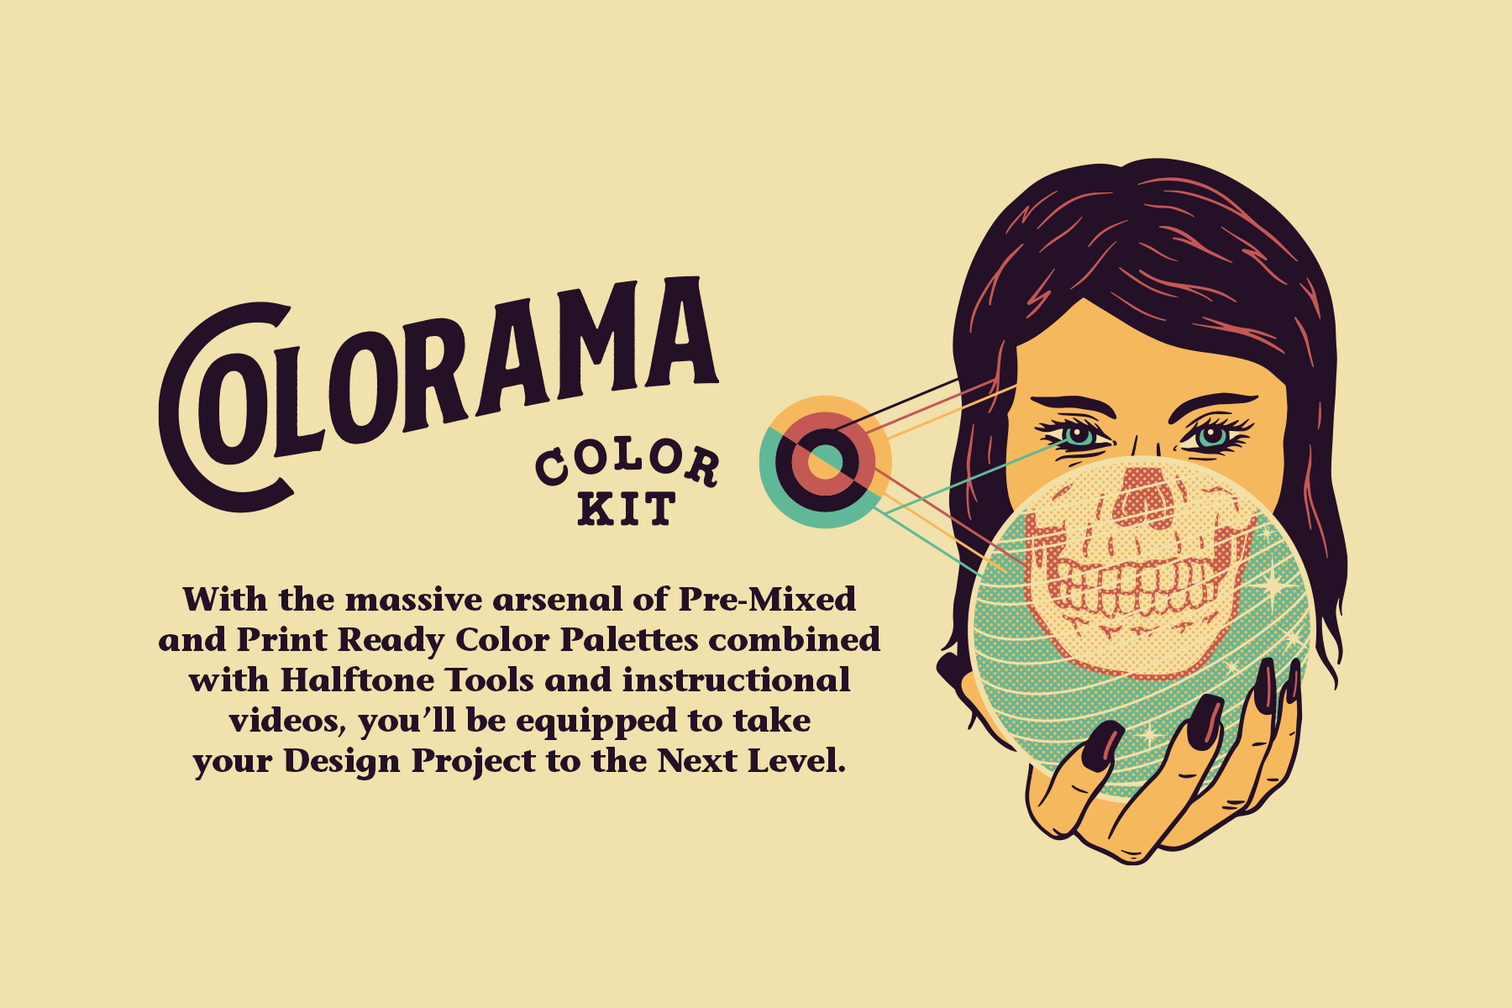 复古彩绘调色板半色调丝网印刷PS工具包 Colorama C